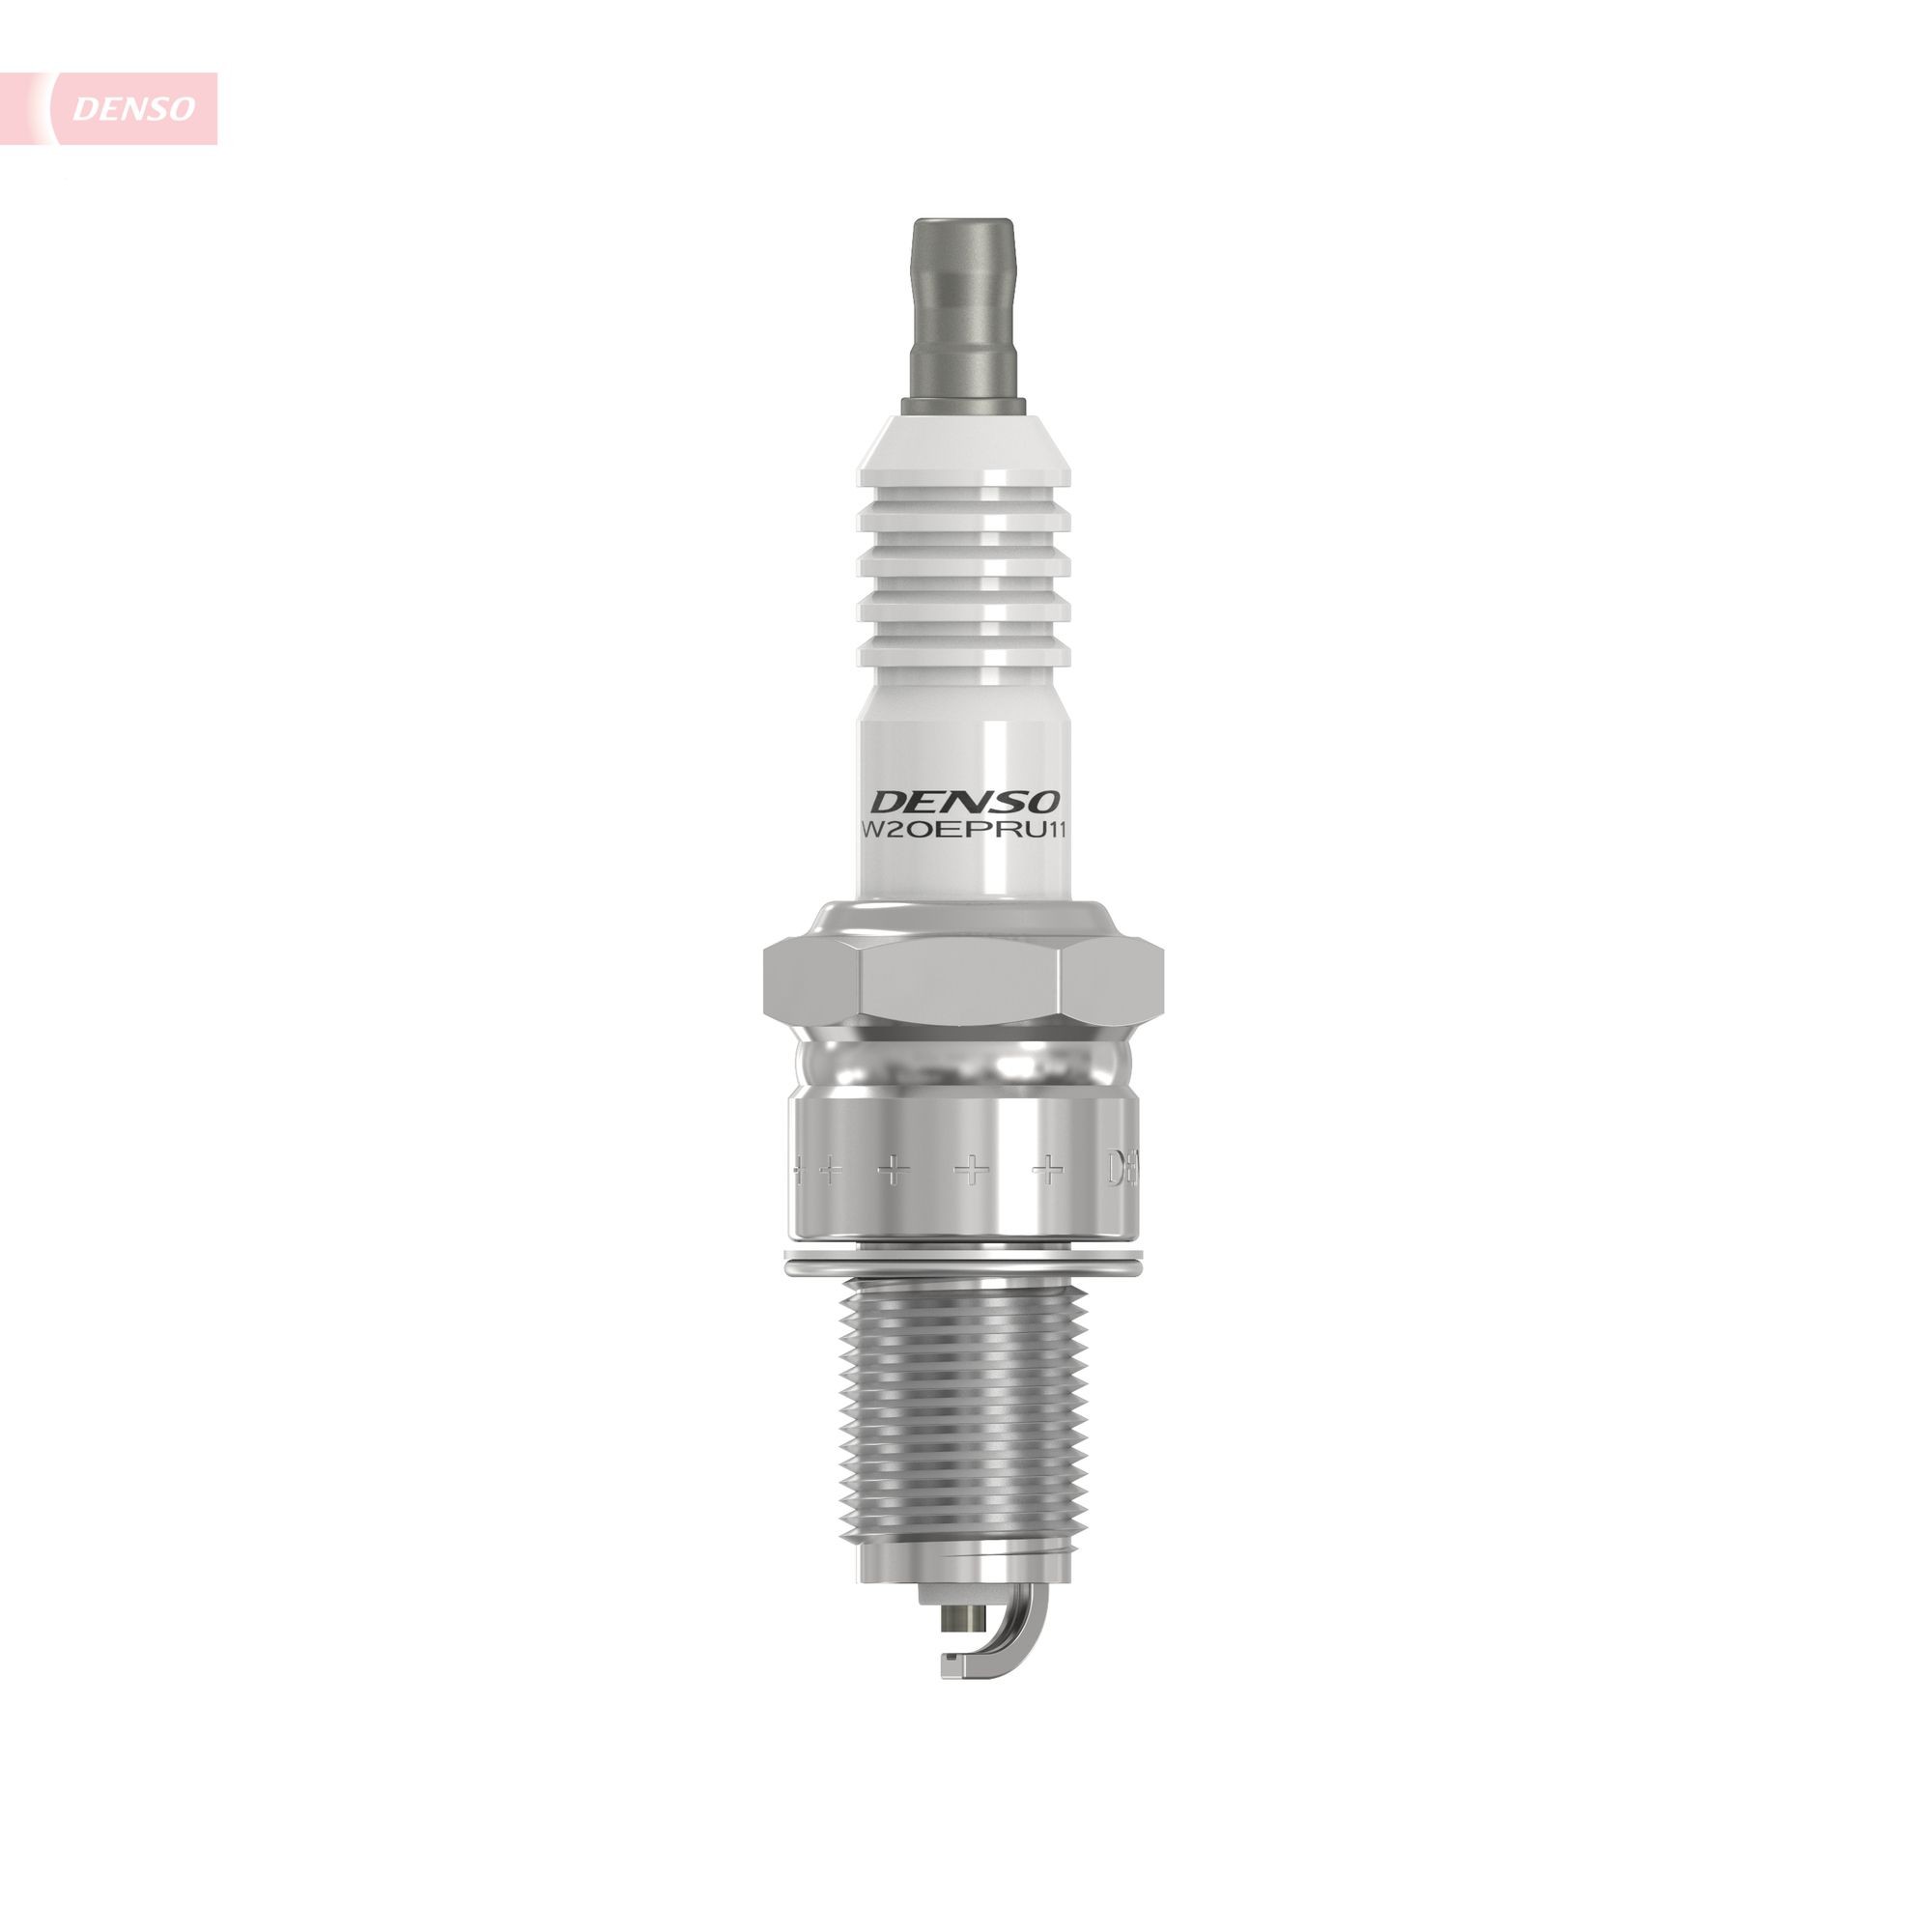 3049 DENSO Nickel W20EPR-U11 Spark plug MS851418